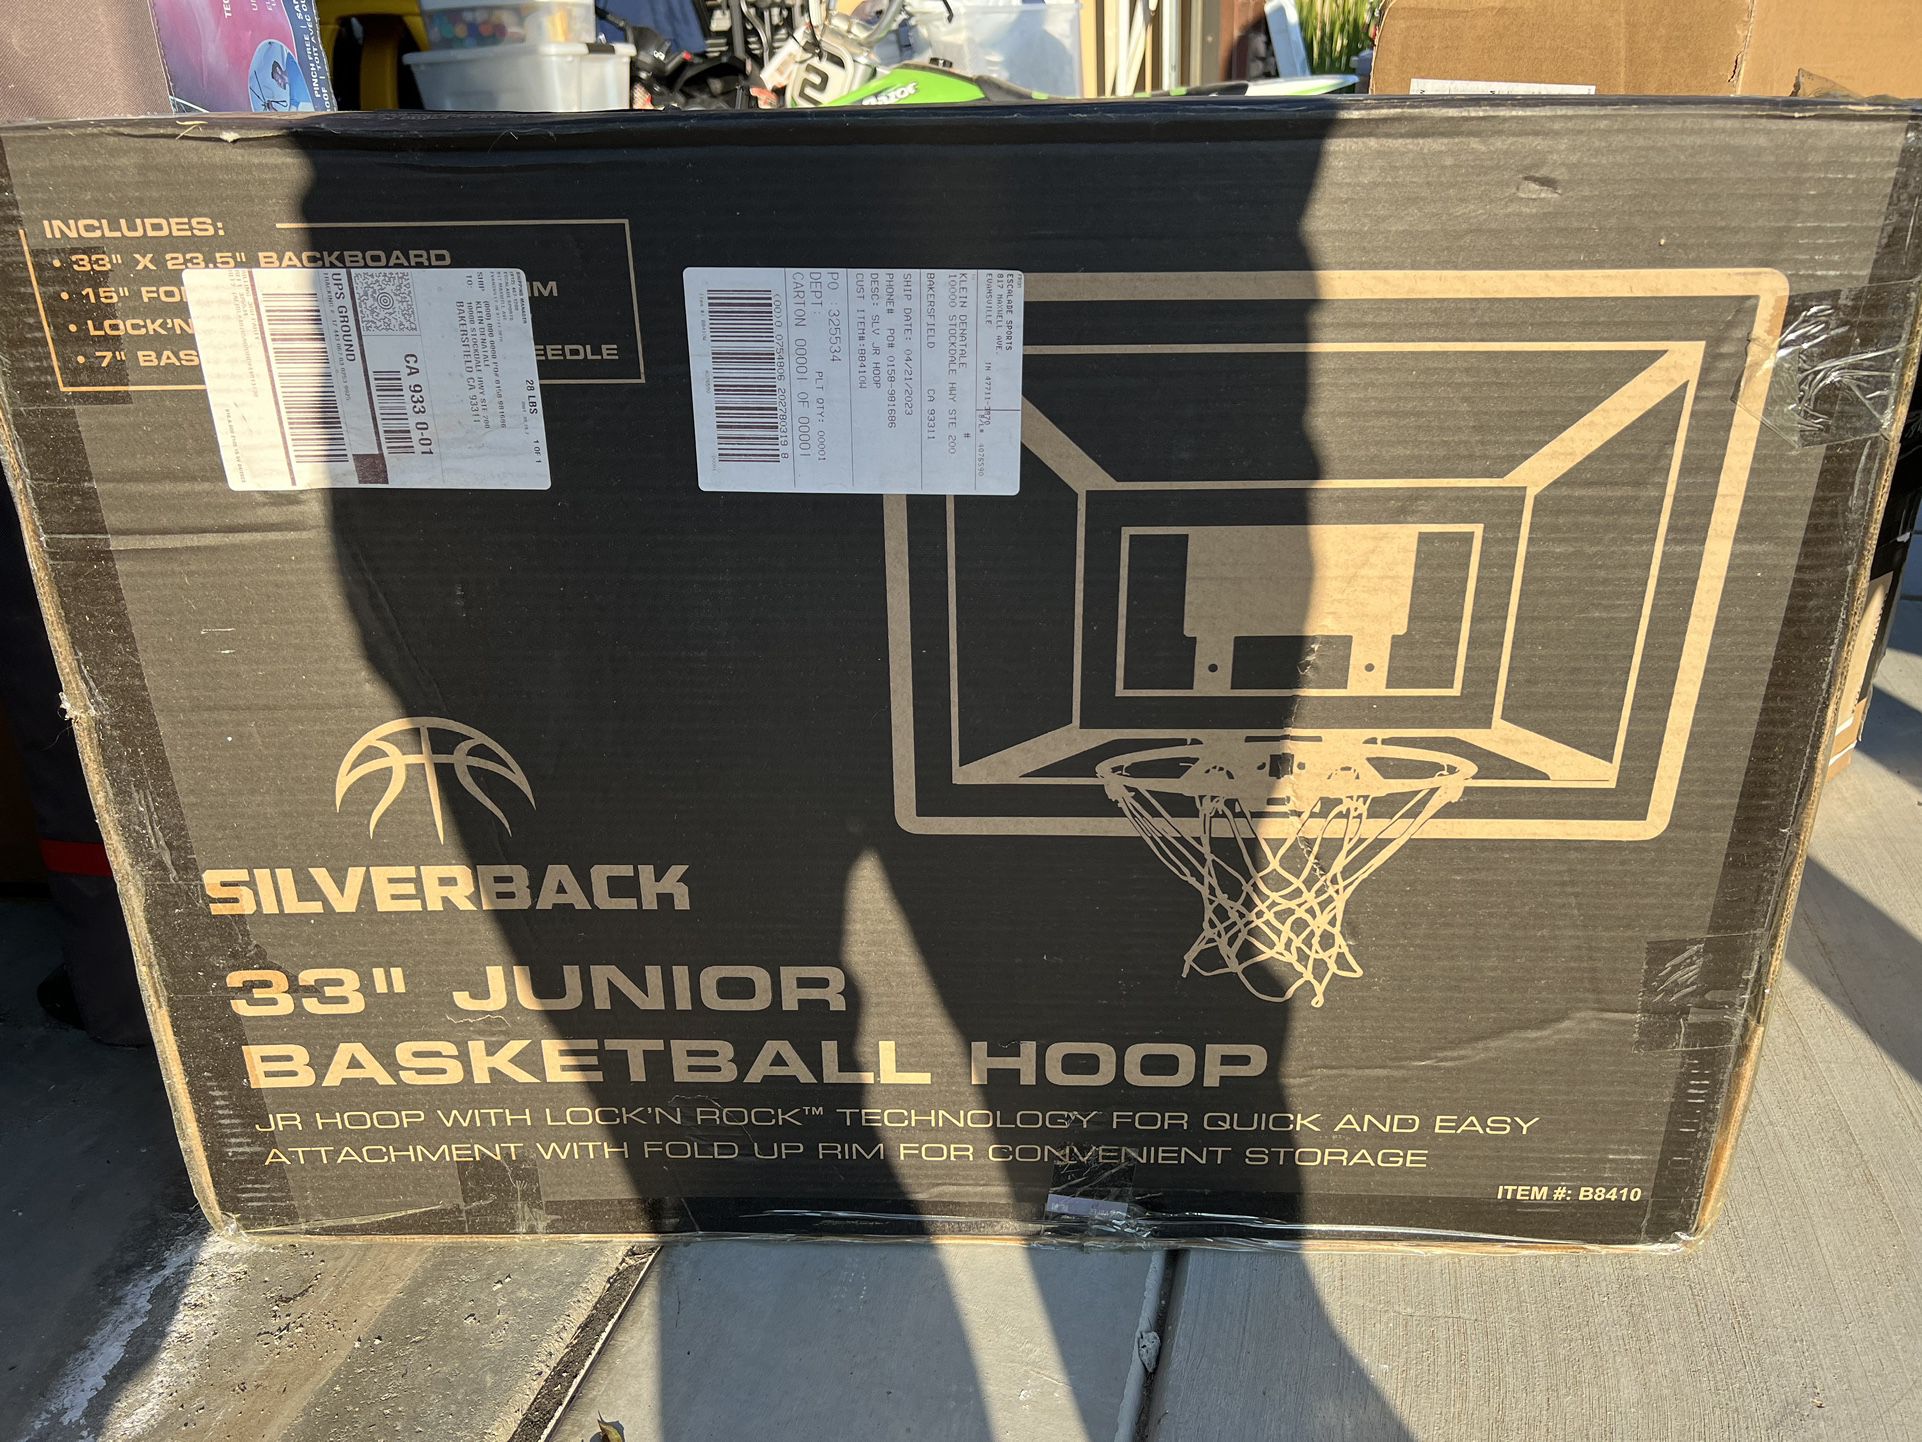 Silverback 33” Junior Basketball Hoop